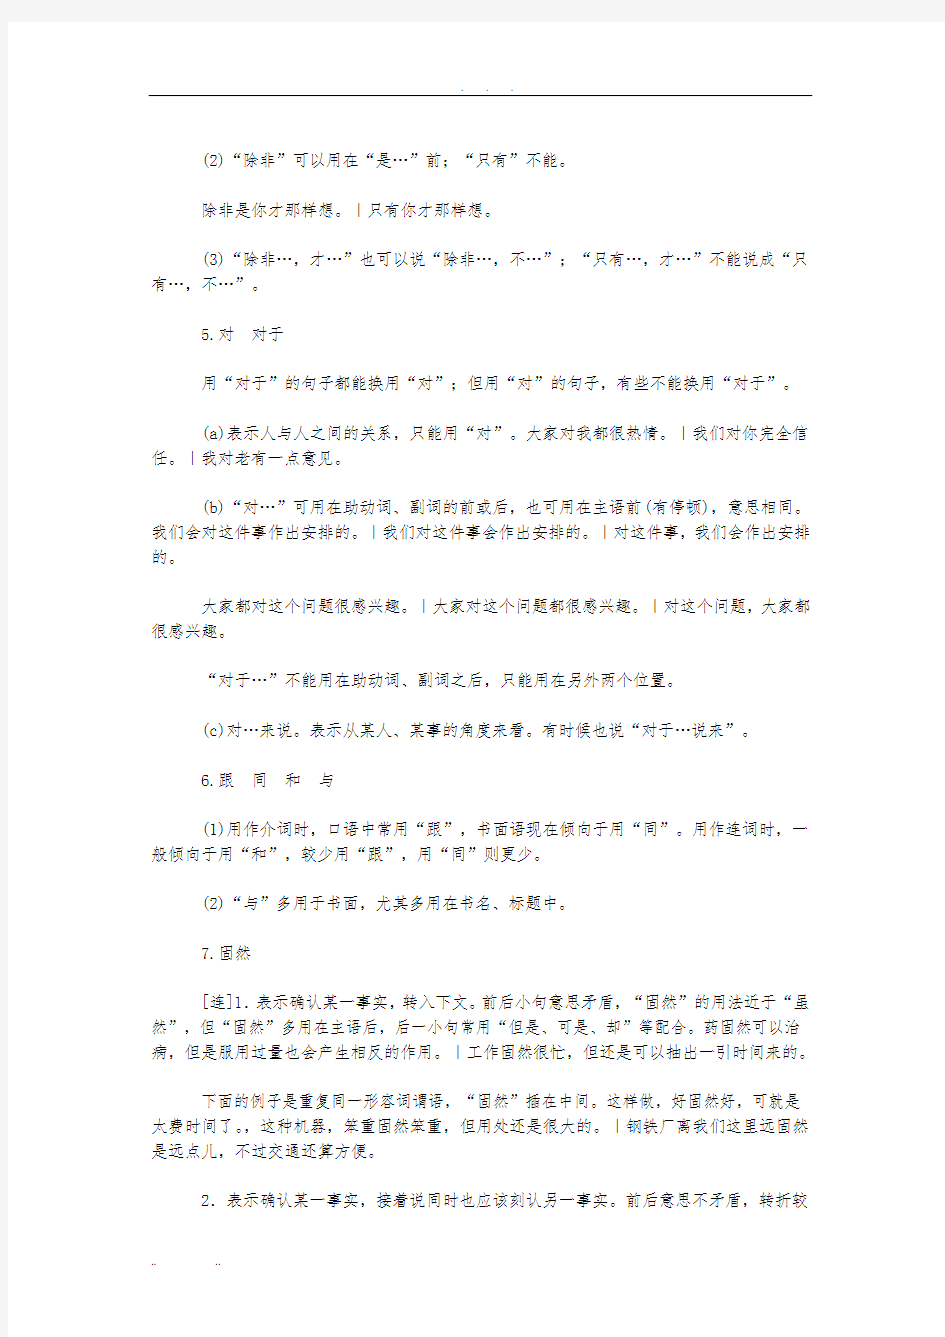 常用现代汉语虚词28例